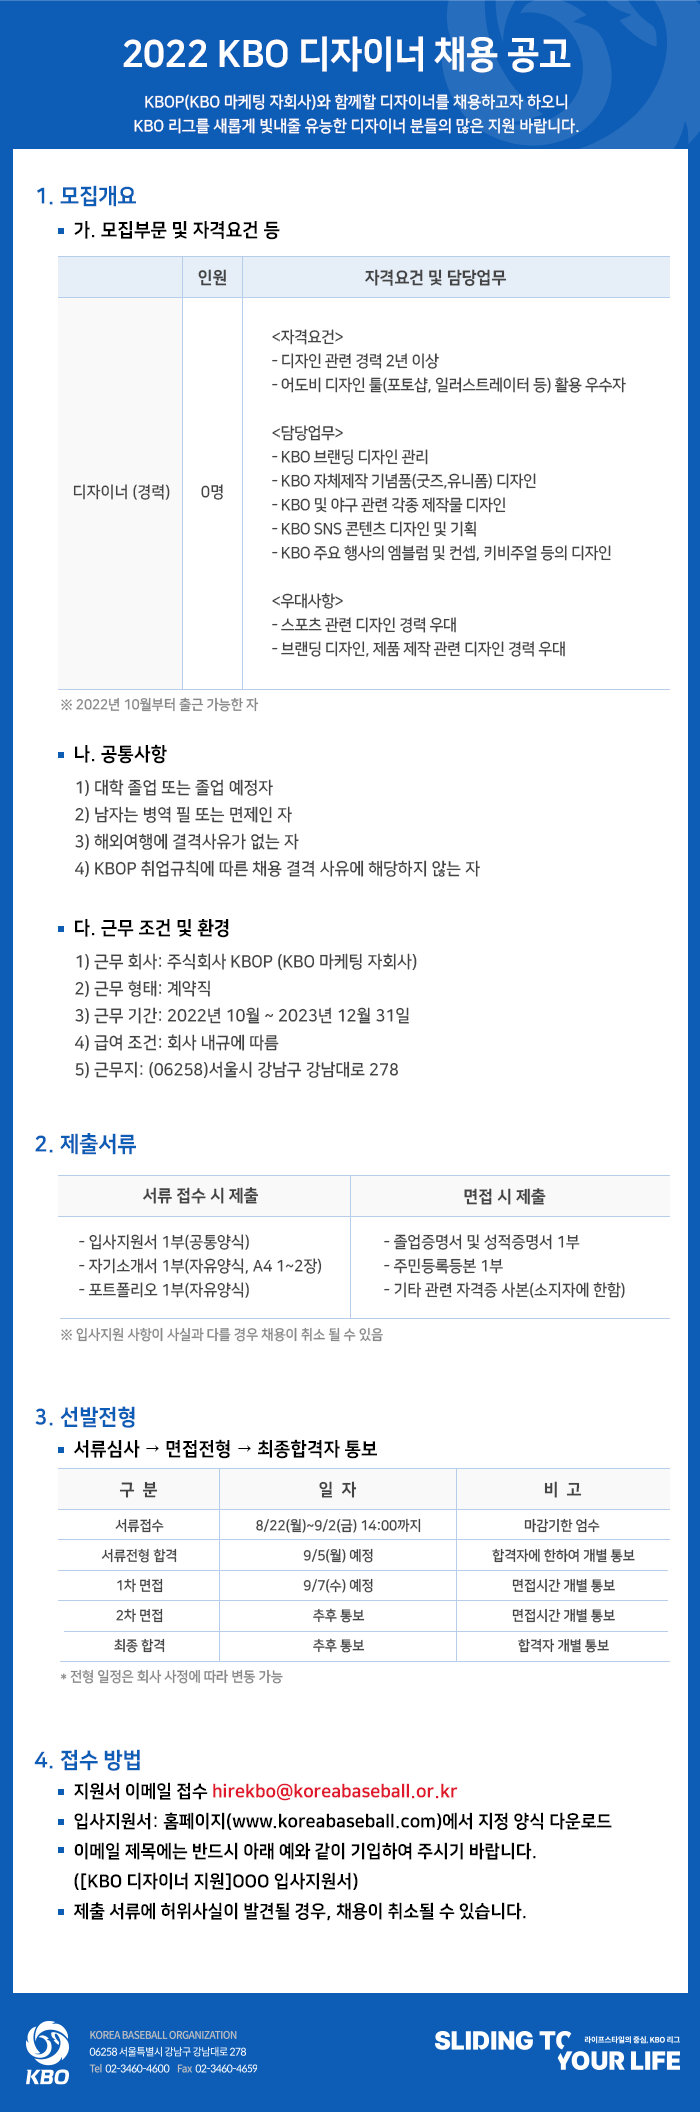 notice/images/2022/8/2022 KBO 경력직 디자이너 8월 공개 채용_web내용.png